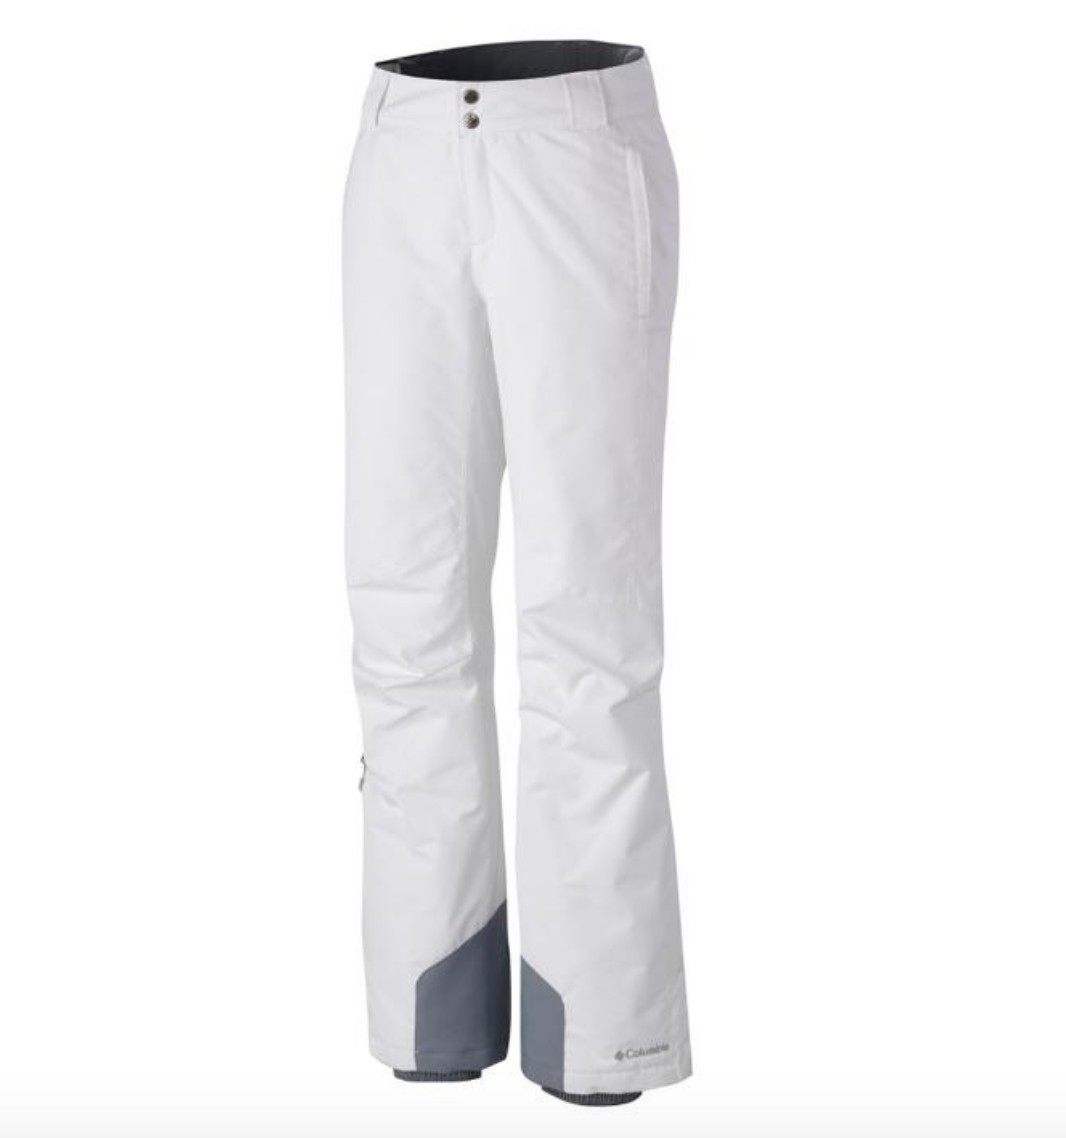 Used Columbia Bugaboo Omni-Heat Snow Pants